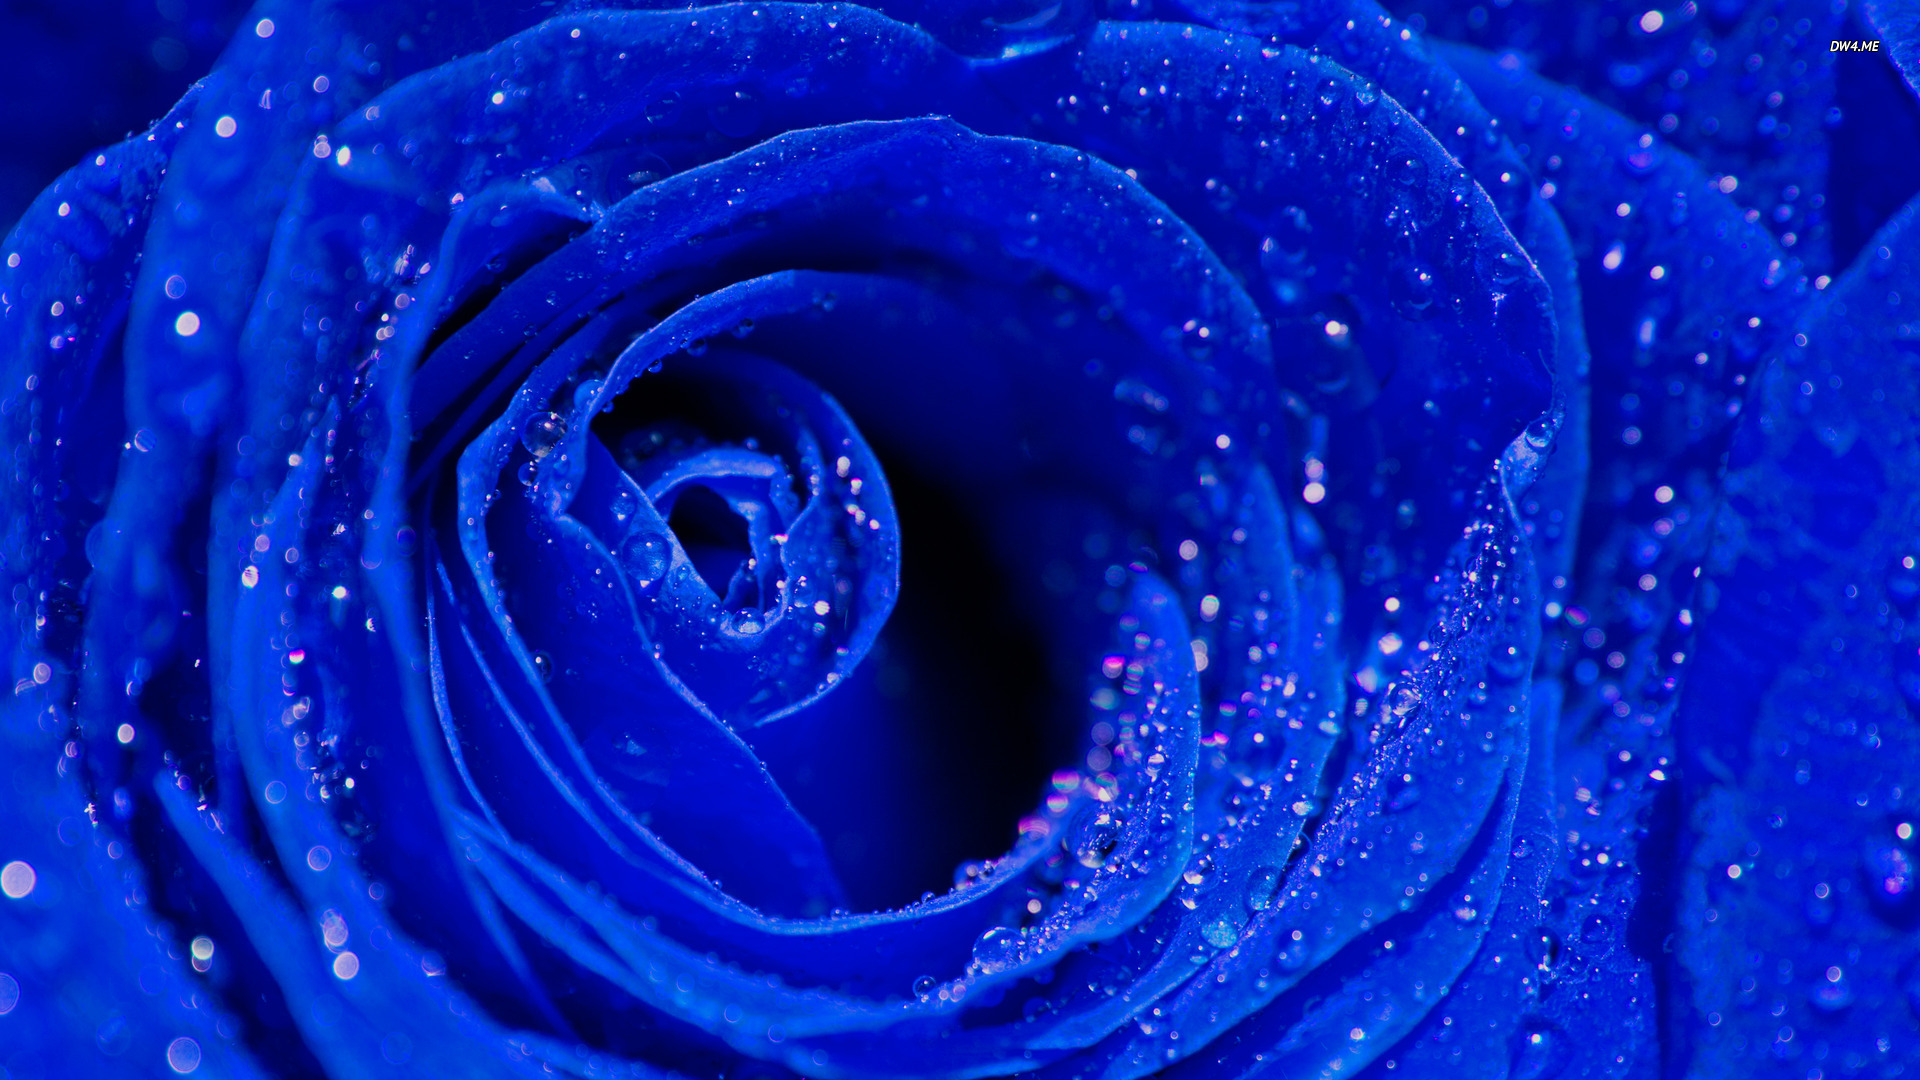 Blue Roses Wallpaper Images - WallpaperSafari